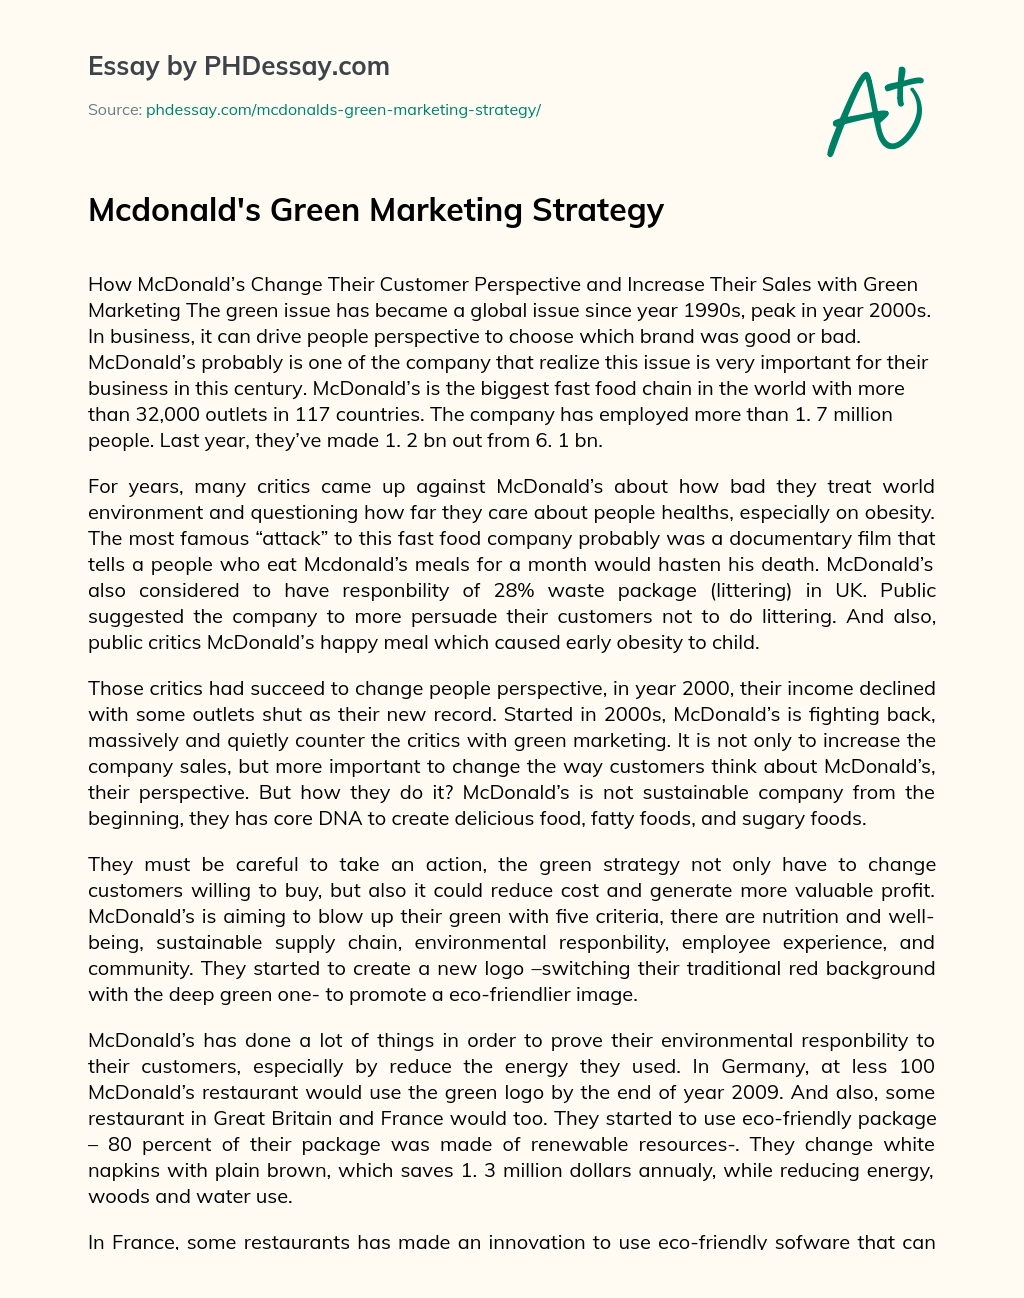 Mcdonald’s Green Marketing Strategy essay